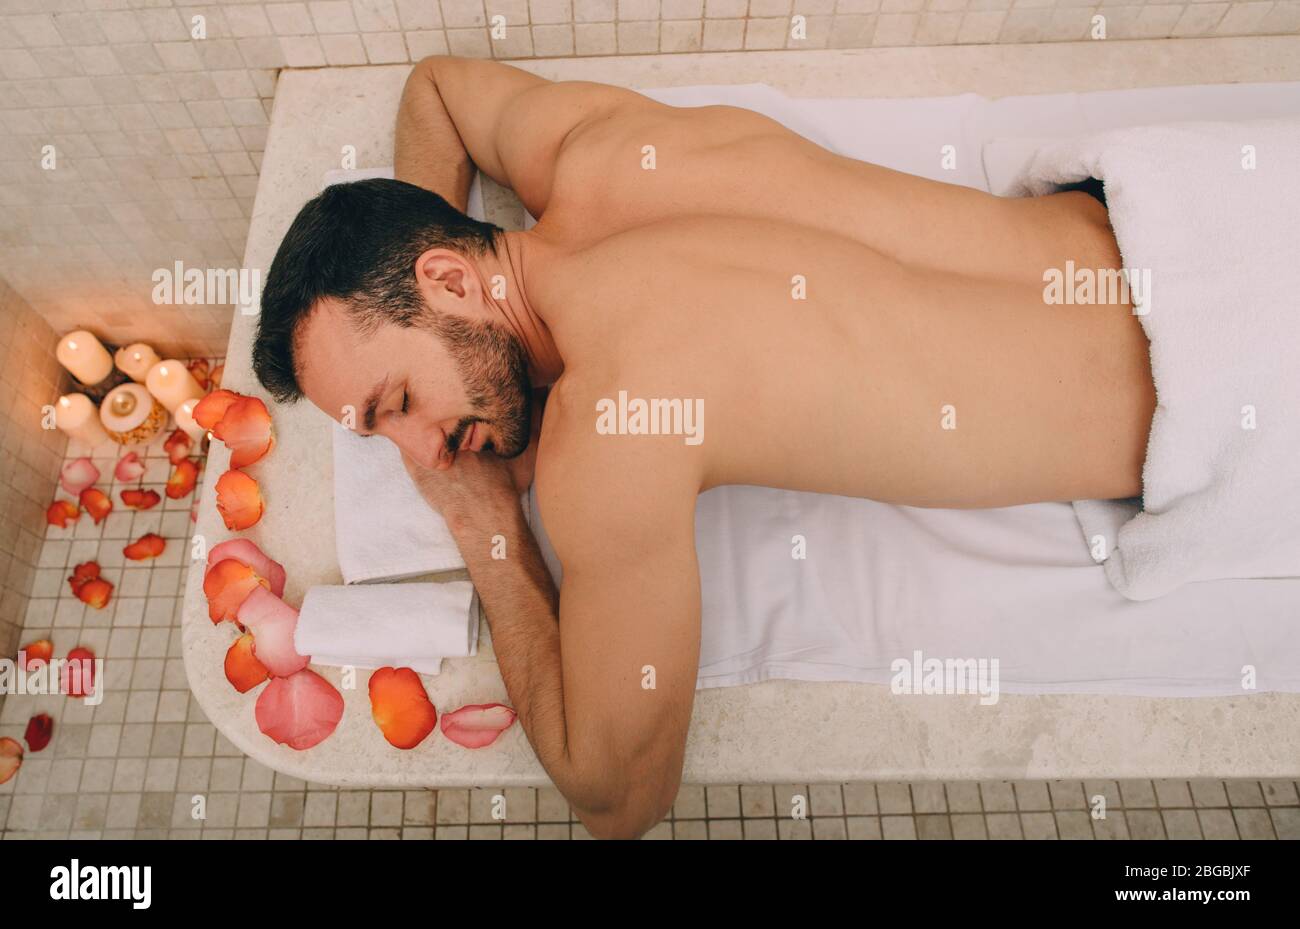 L'homme caucasien dans un cadre romantique bénéficie d'un bain turc. Une table en marbre chaud réchauffe le corps d'un homme dans un hammam Banque D'Images